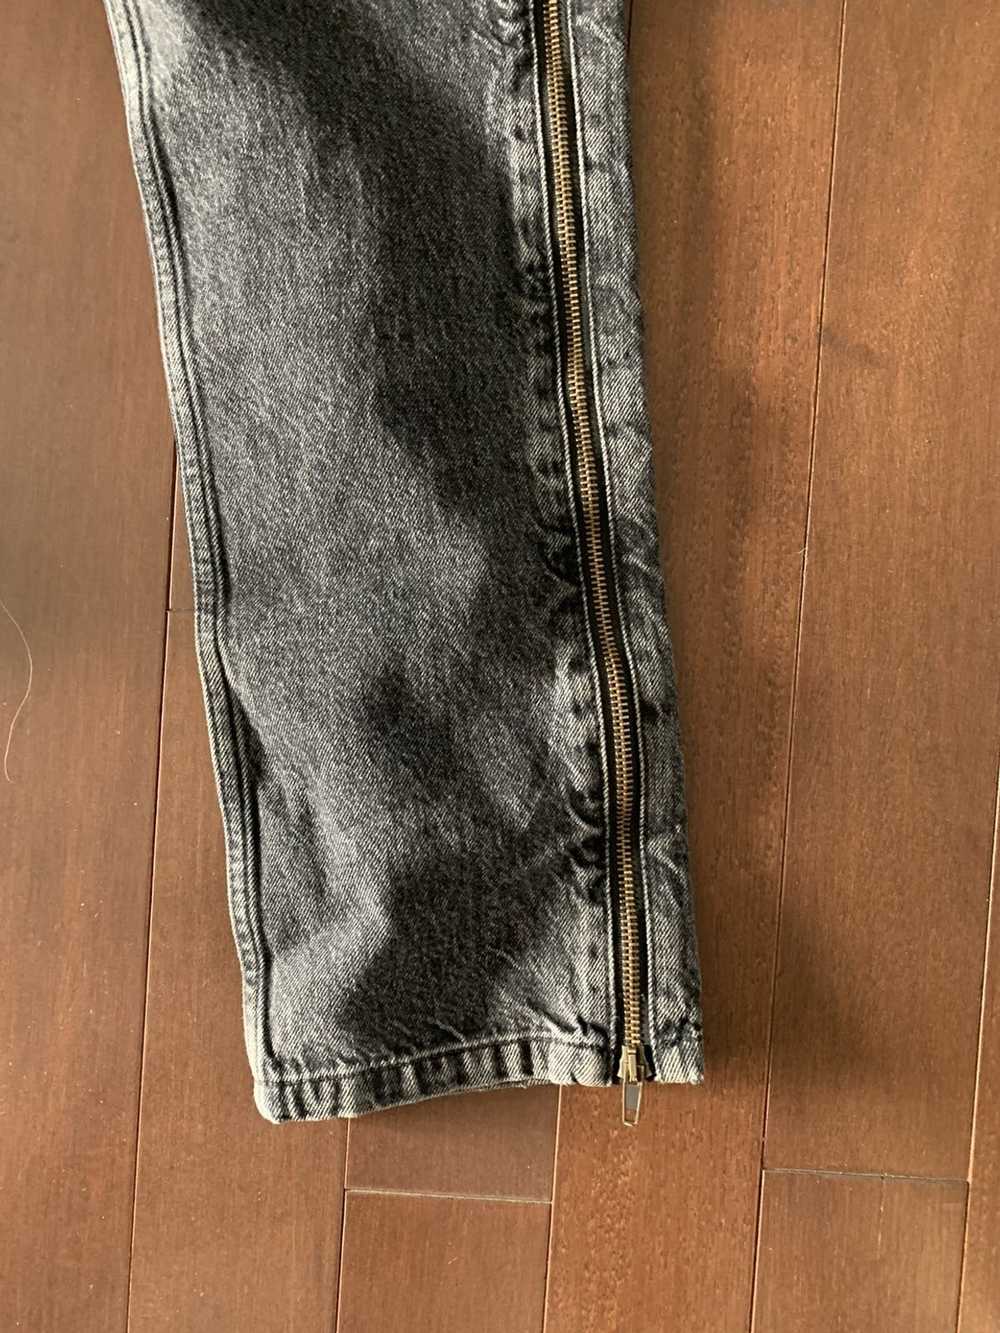 Vetements Vetements zipper jeans - image 4